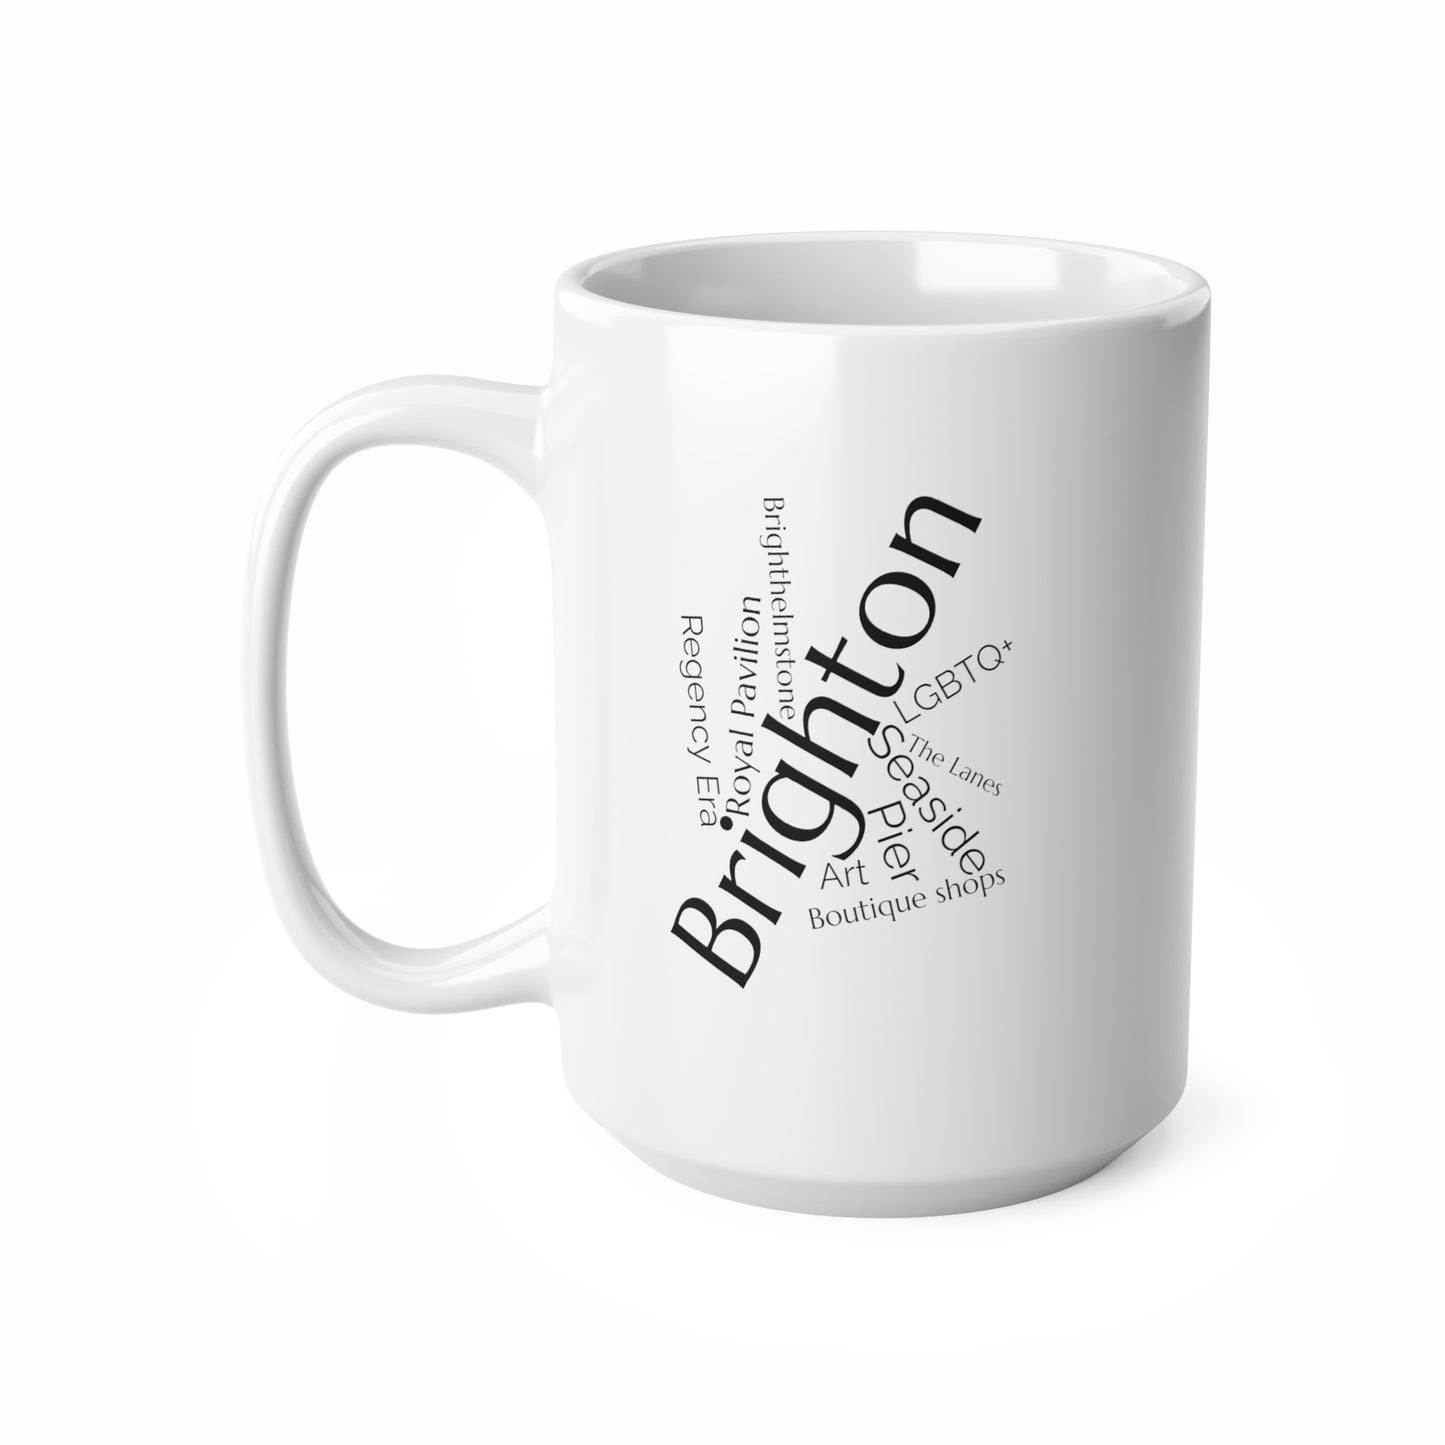 Brighton word mug, local mug, geography mug, gift, mug, coffee cup, word mug, wordcloud mug, christmas gift, birthday gift